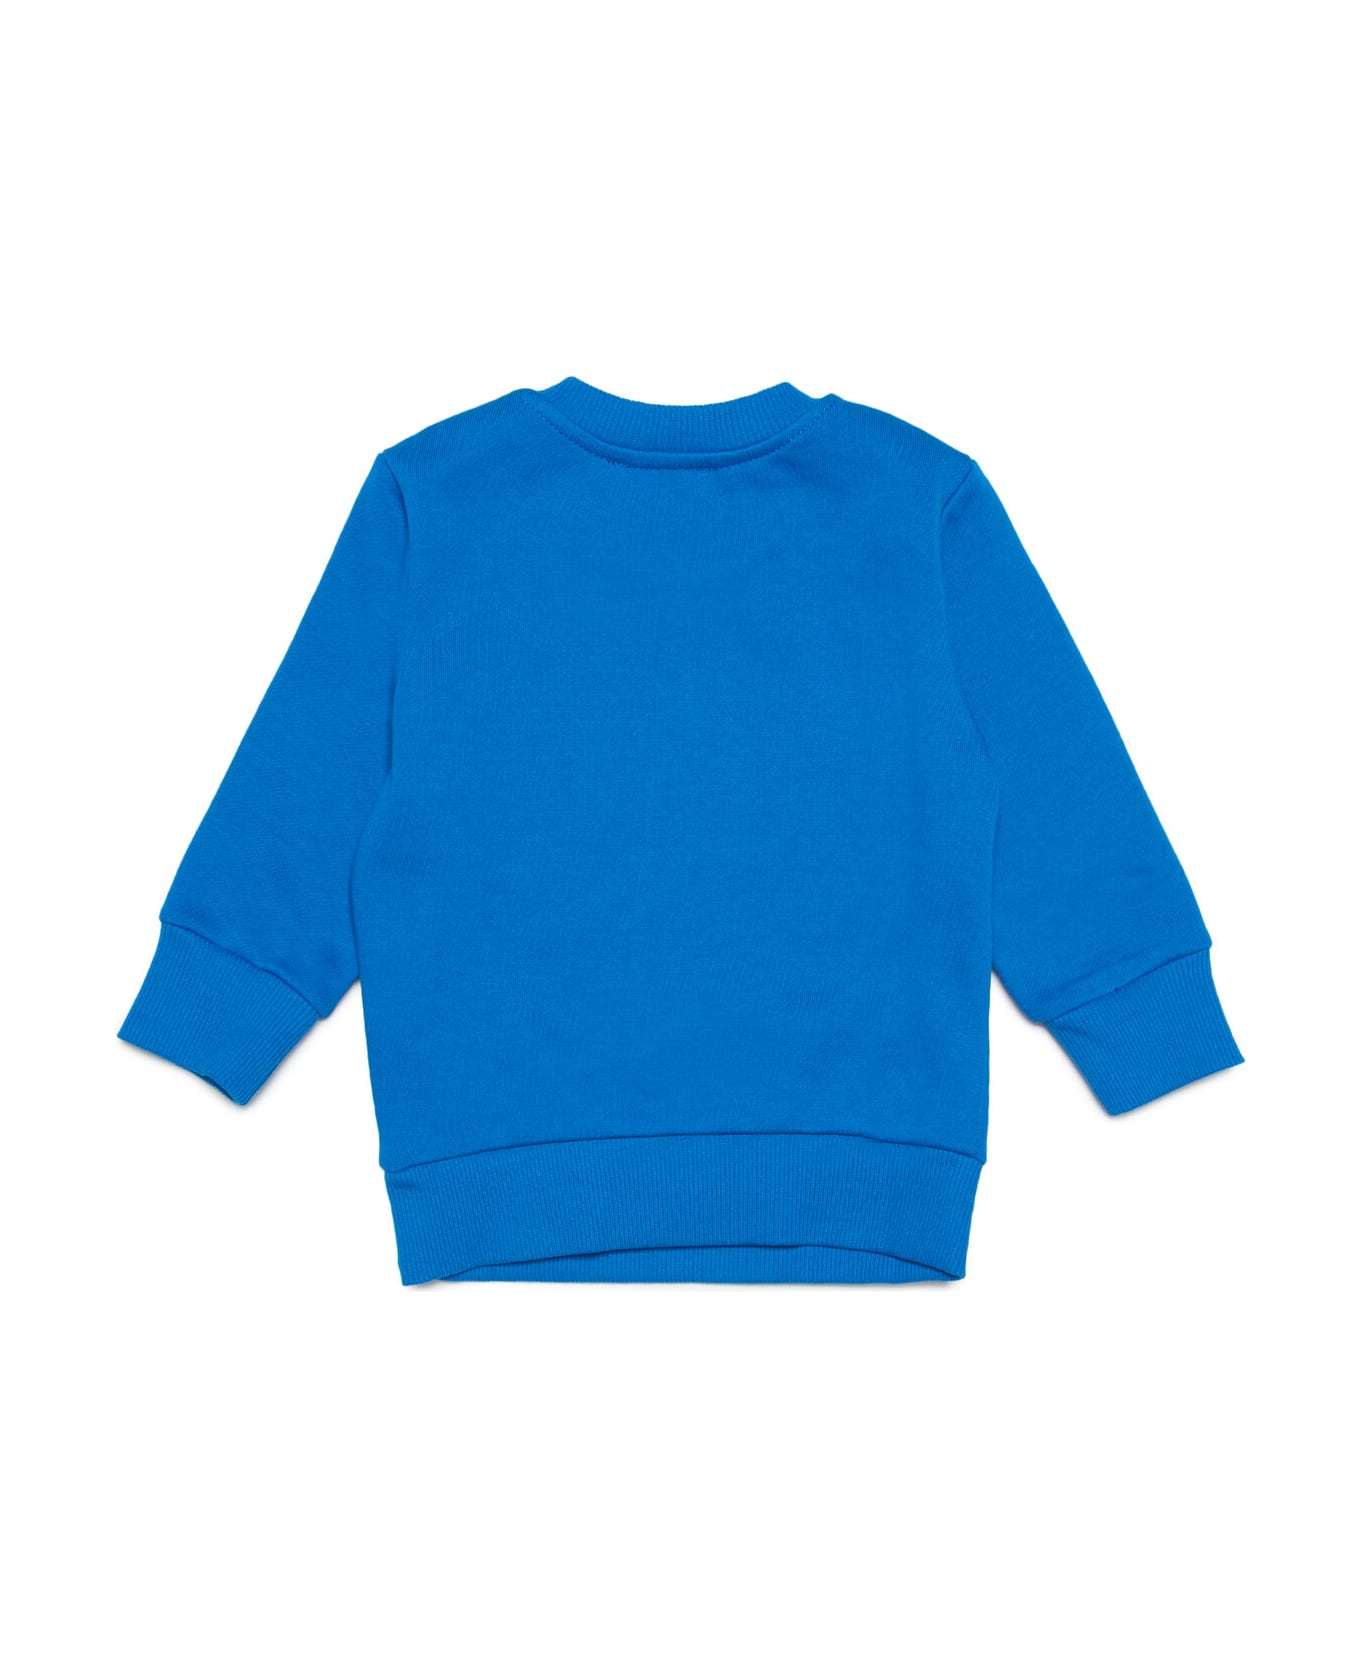 Diesel Sannyb Sweat-shirt Diesel Blue Crew-neck Cotton Sweatshirt With Logo In 'wave' Version - Princess blue